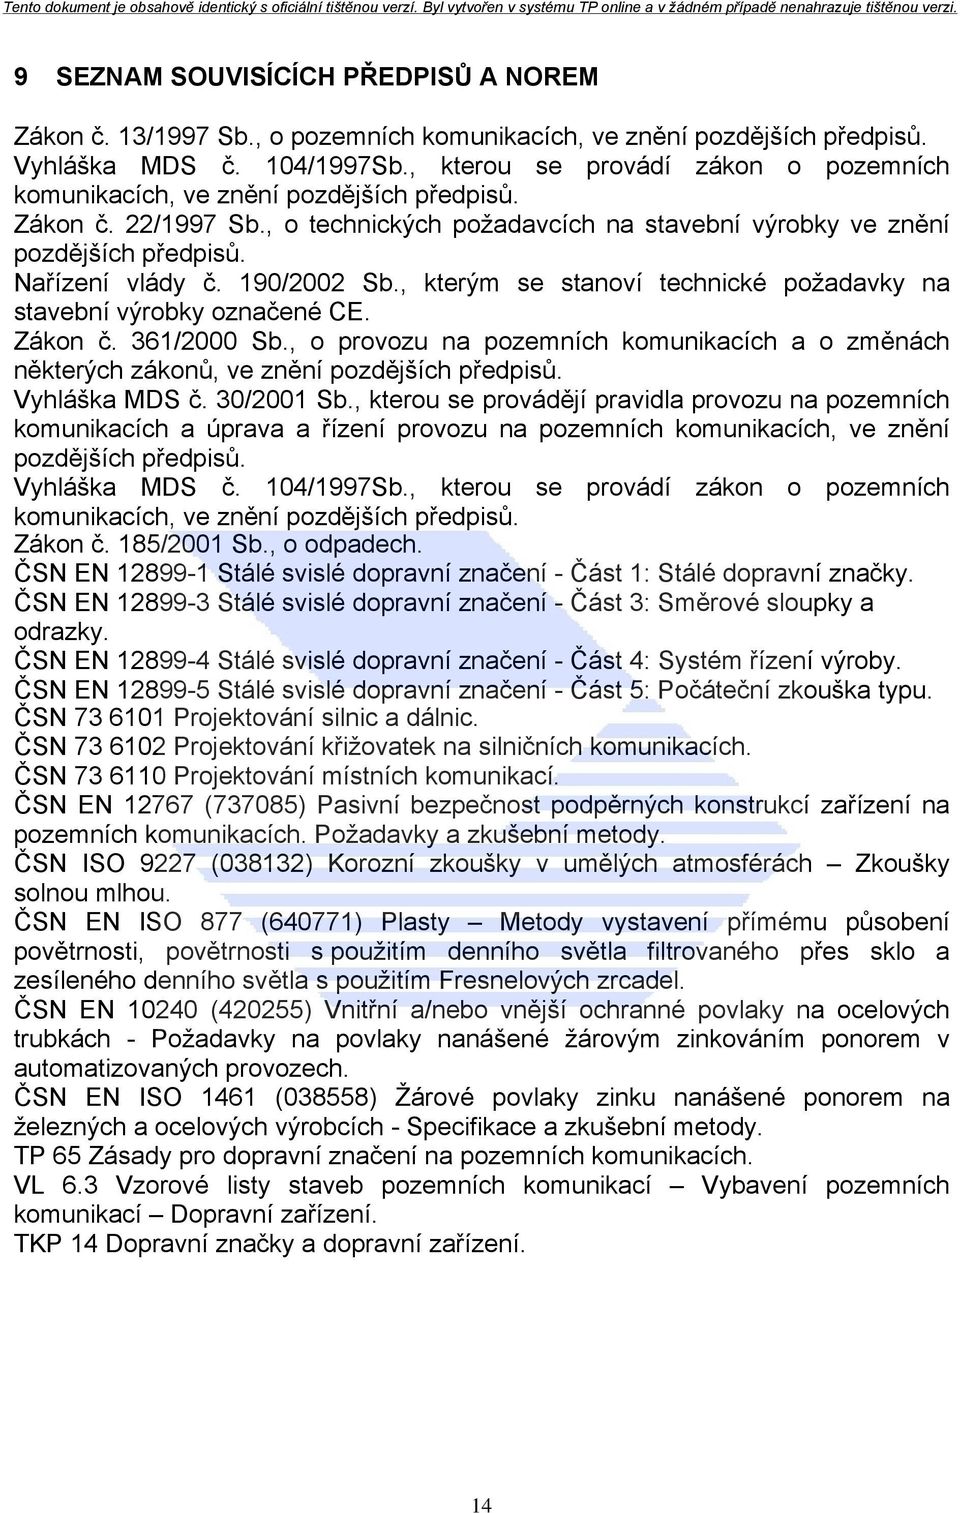 190/2002 Sb., kterým se stanoví technické požadavky na stavební výrobky označené CE. Zákon č. 361/2000 Sb.